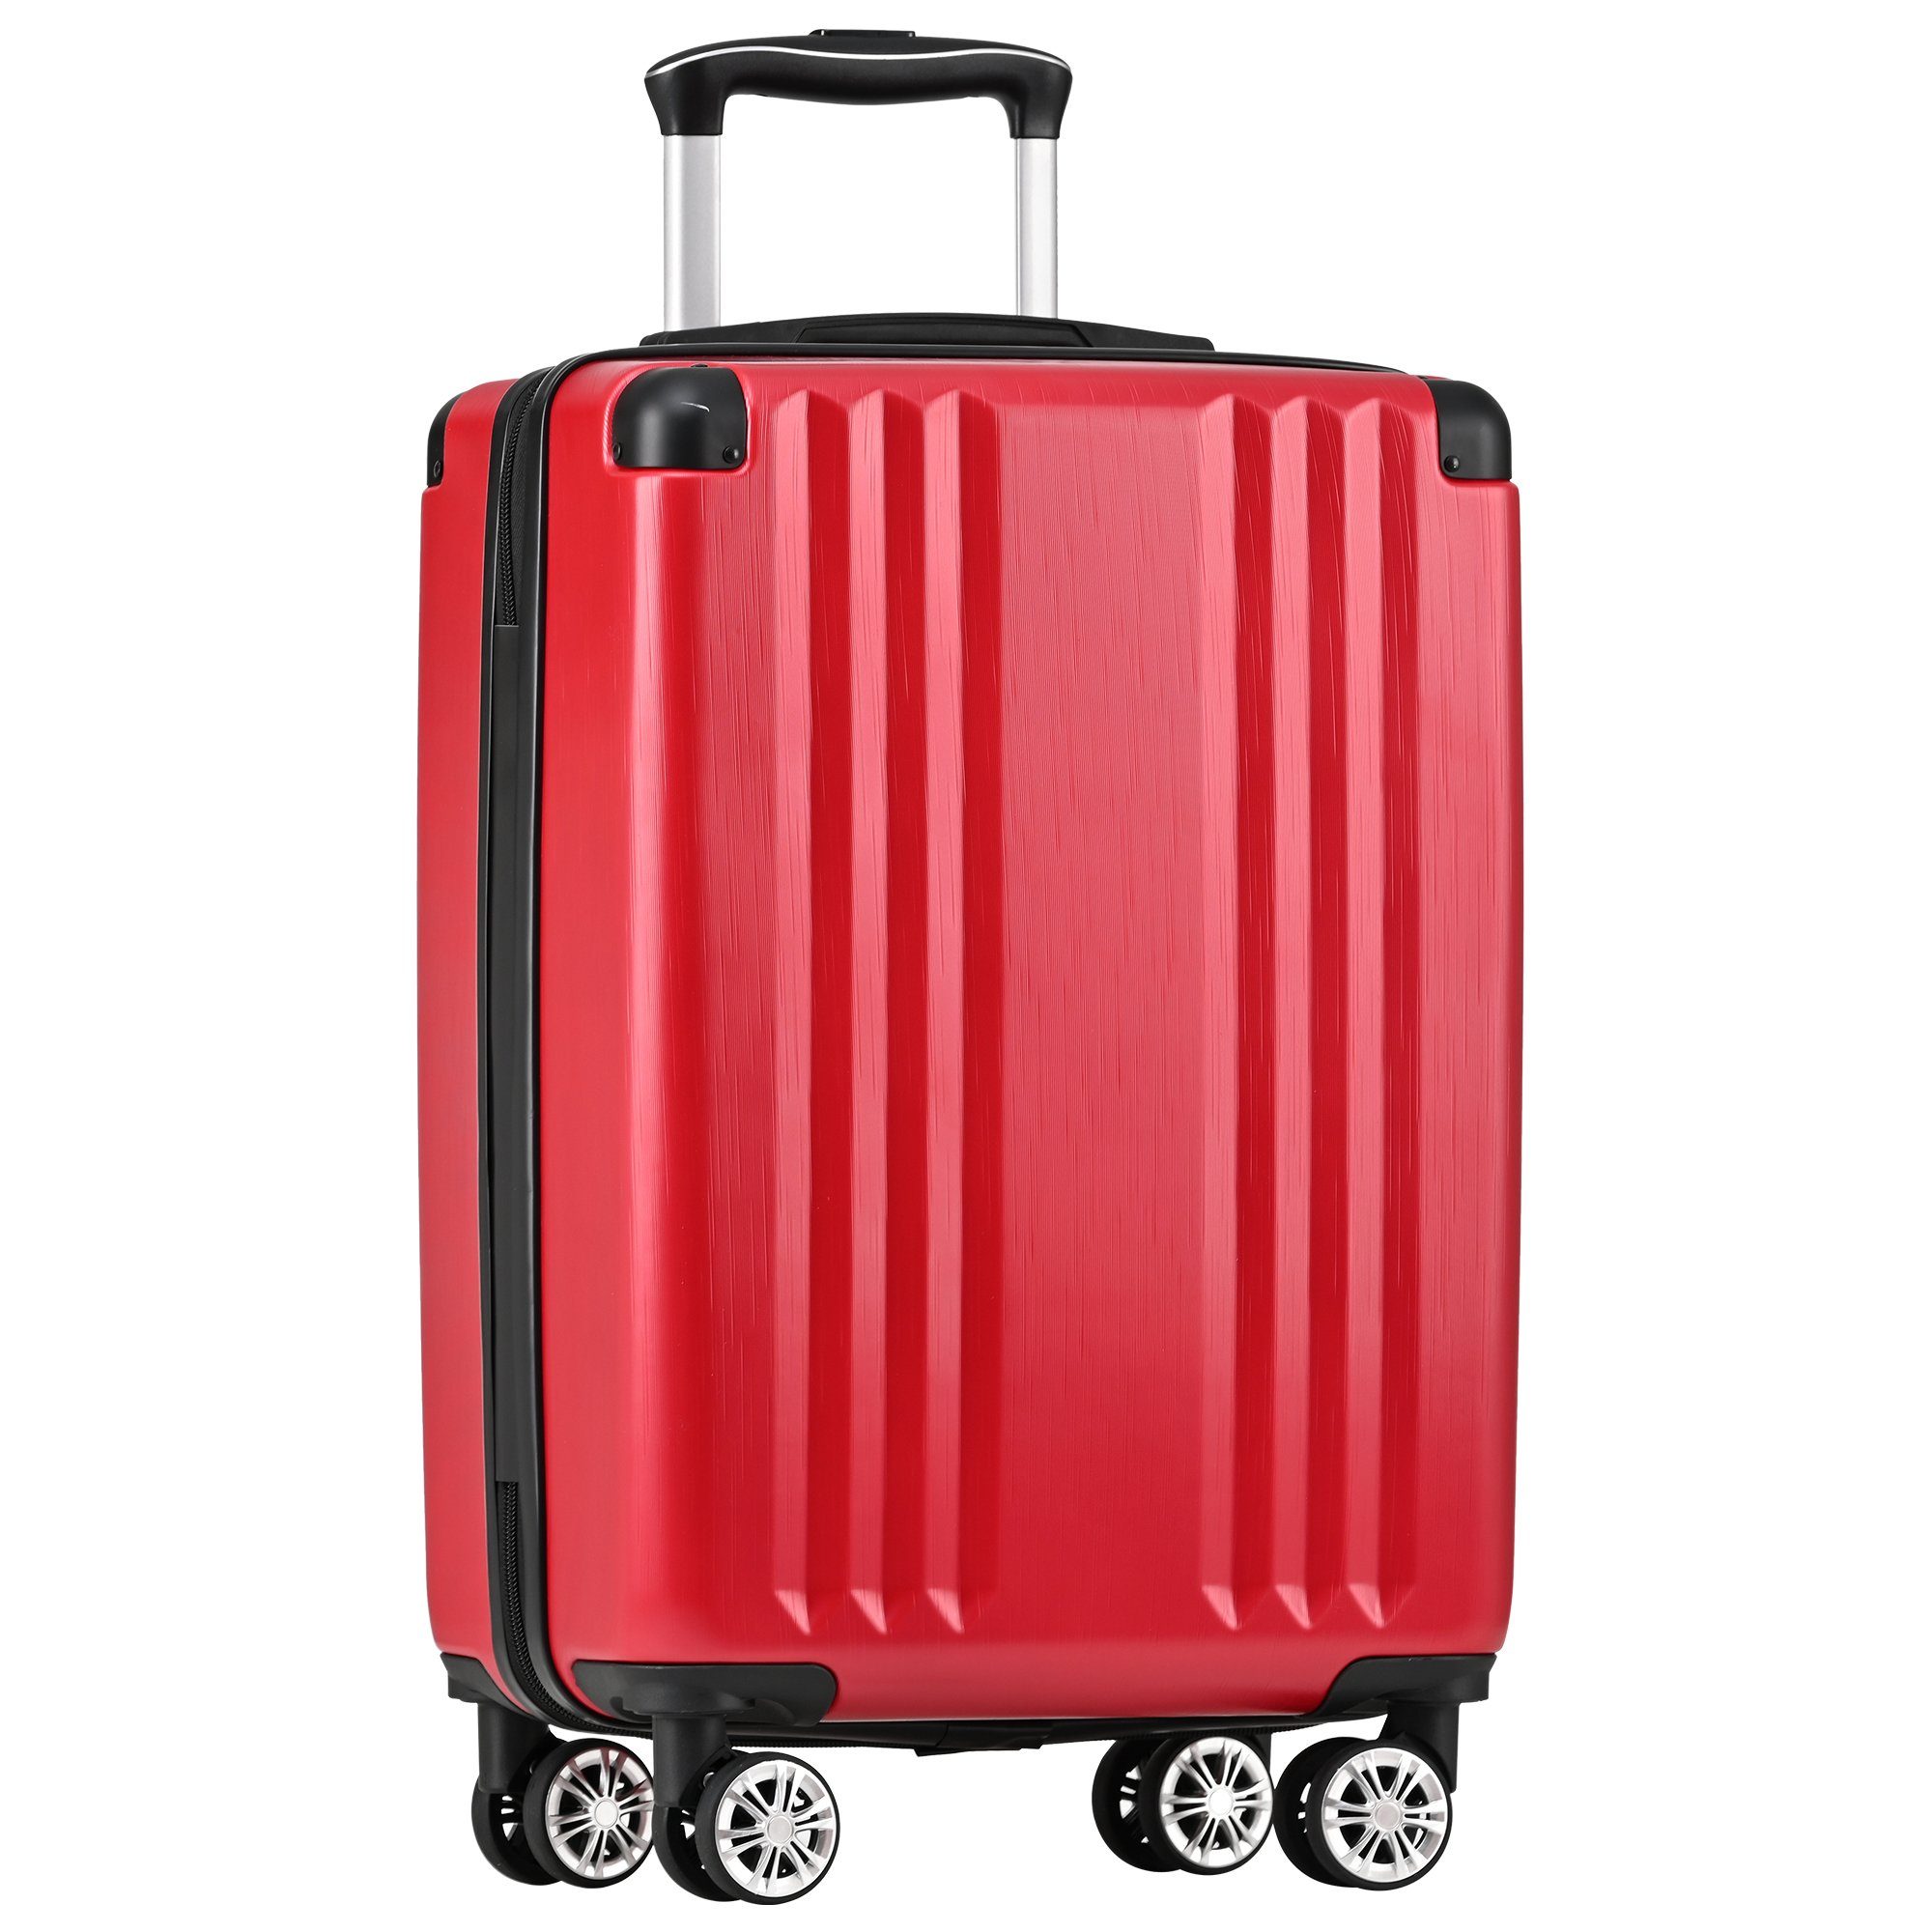 Handgepäck-Trolley ABS-Material, Zollschloss, 4 Rollen, M-Größe:56.5*37.5*22.5 TSA Rot Reisekoffer Ulife